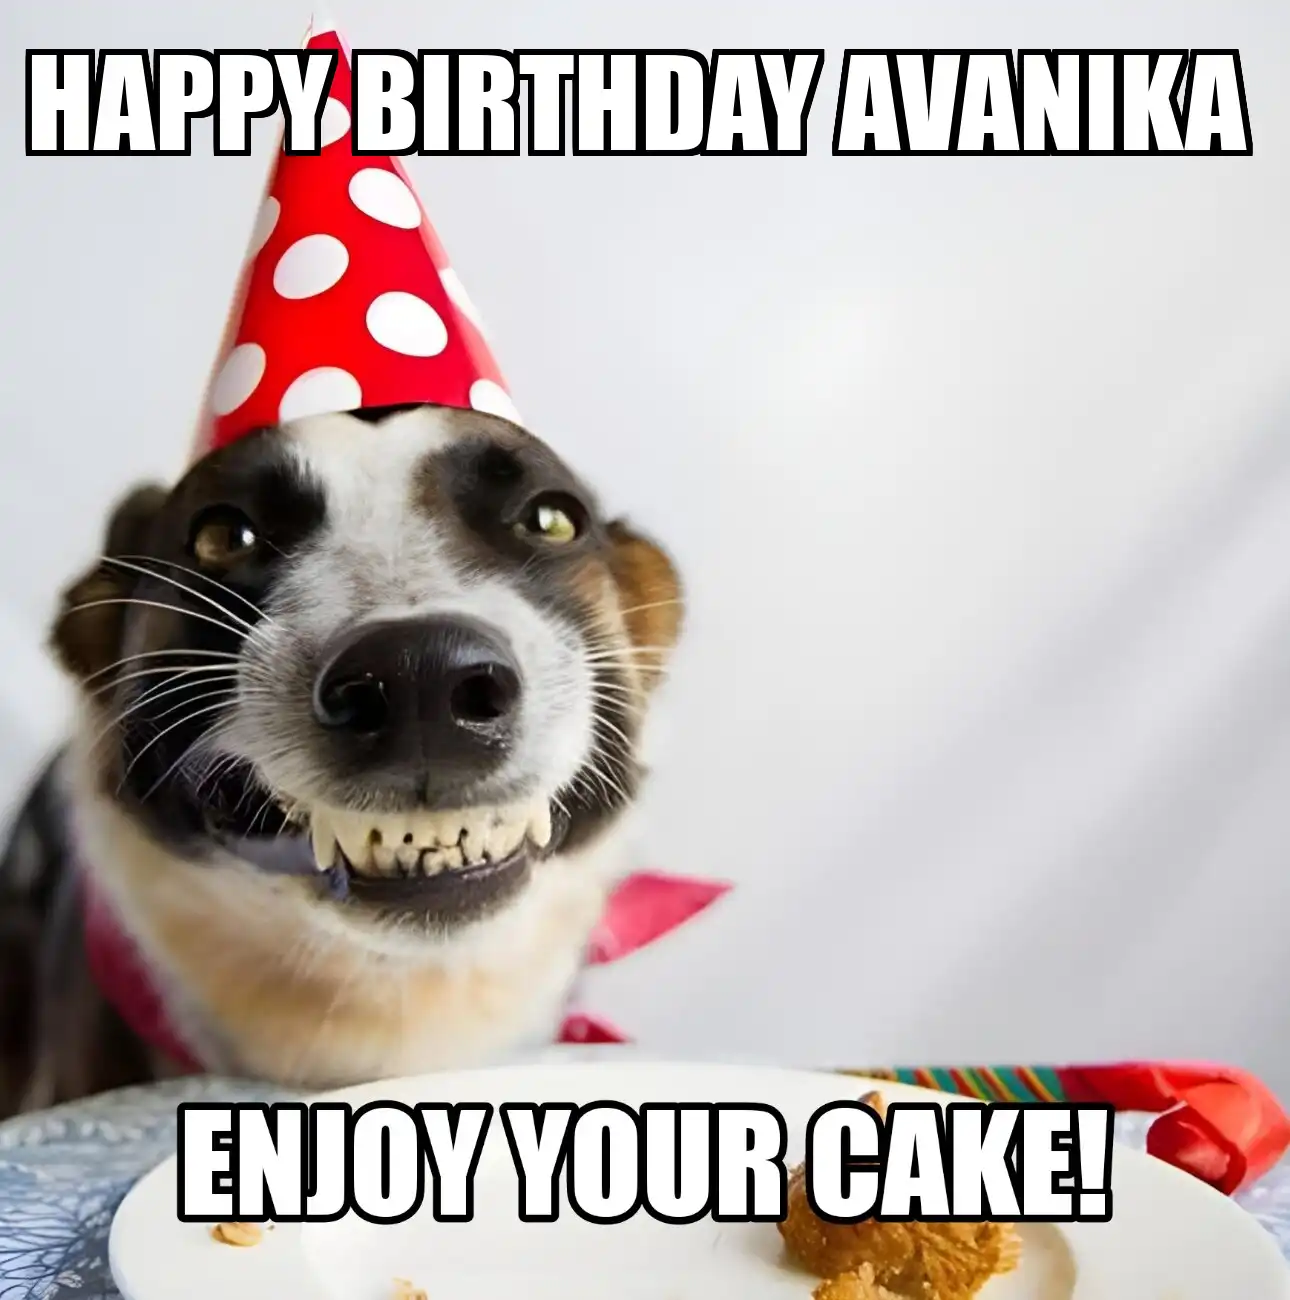 Happy Birthday Avanika Enjoy Your Cake Dog Meme